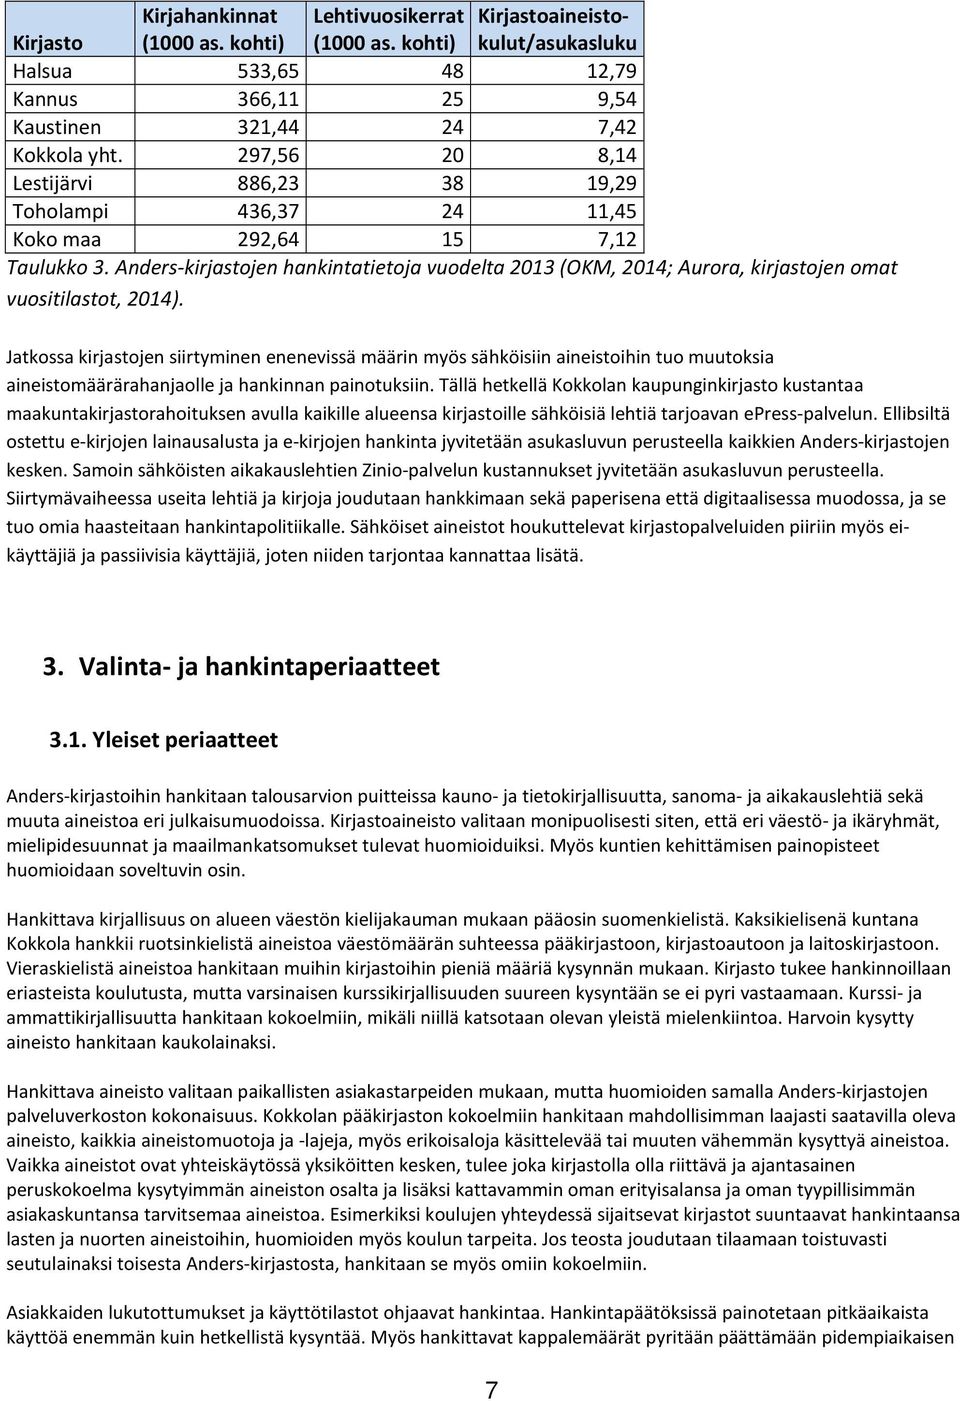 Anders-kirjastojen hankintatietoja vuodelta 2013 (OKM, 2014; Aurora, kirjastojen omat vuositilastot, 2014).